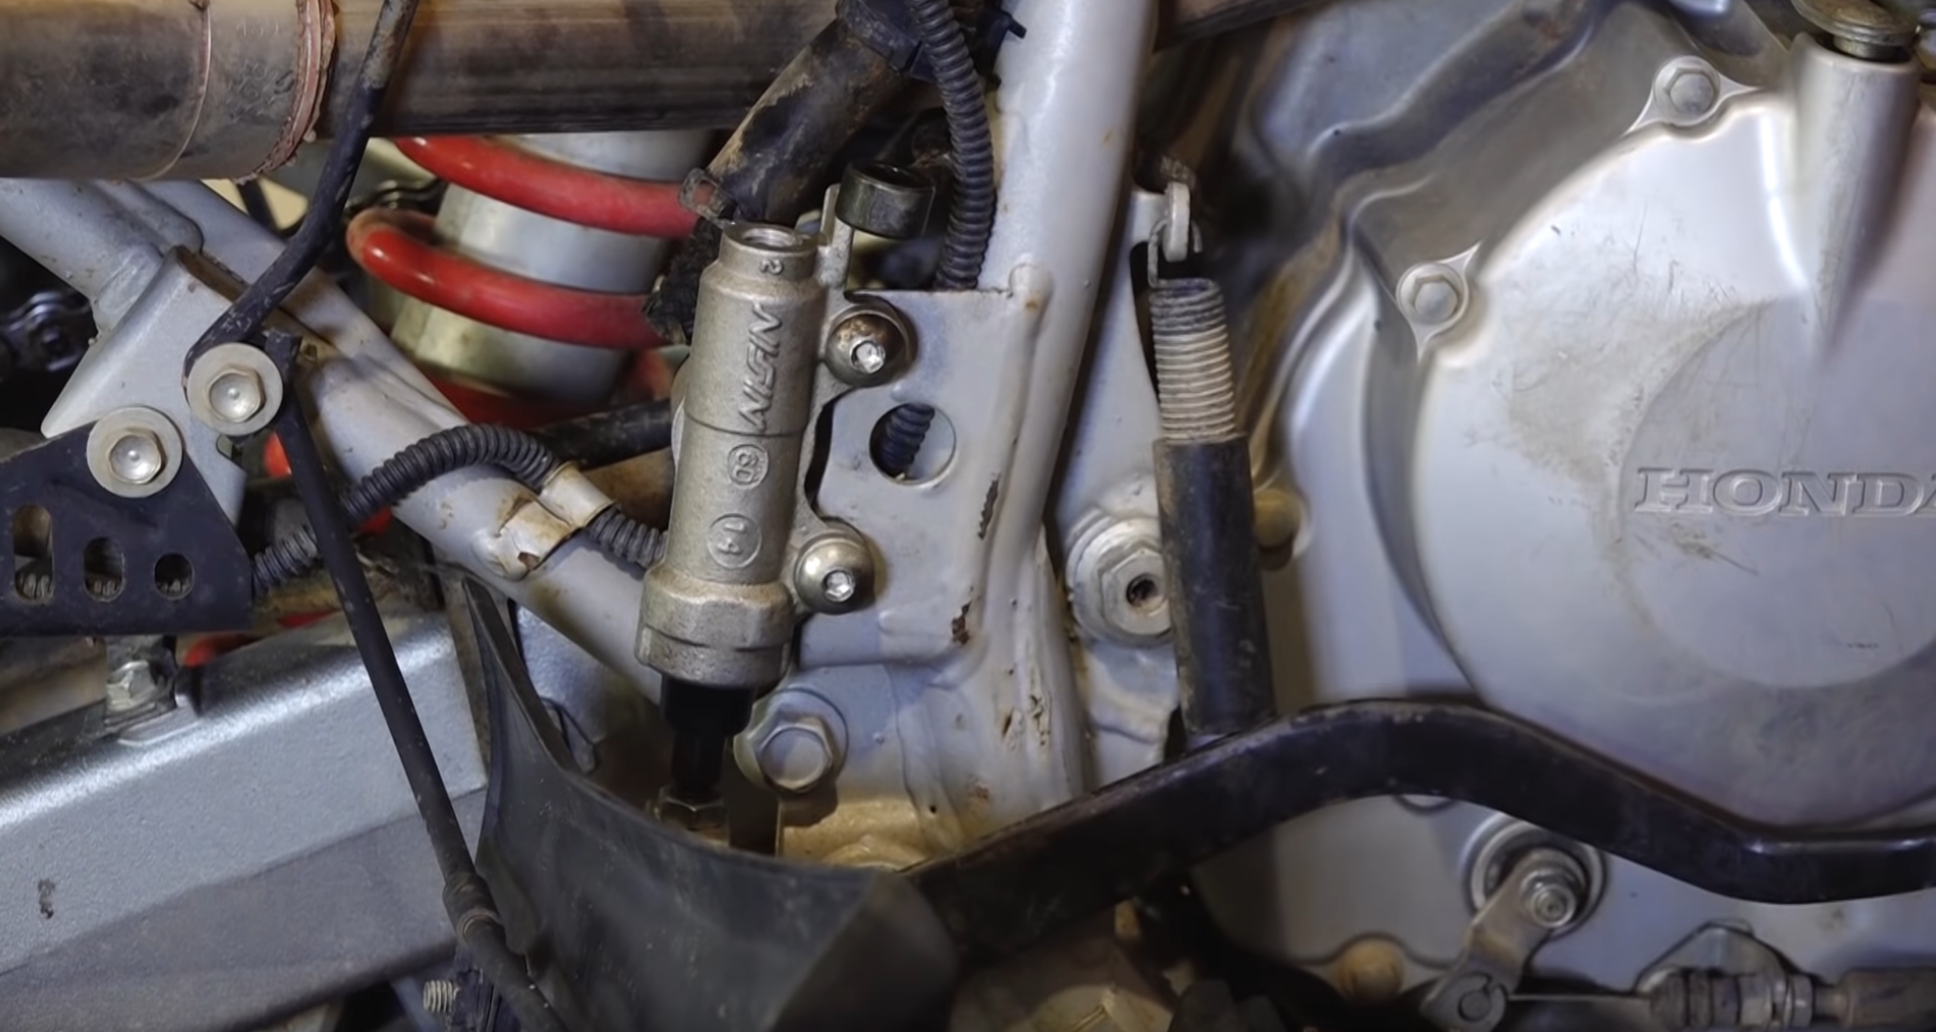 Honda TRX 400 rear master cylinder installation